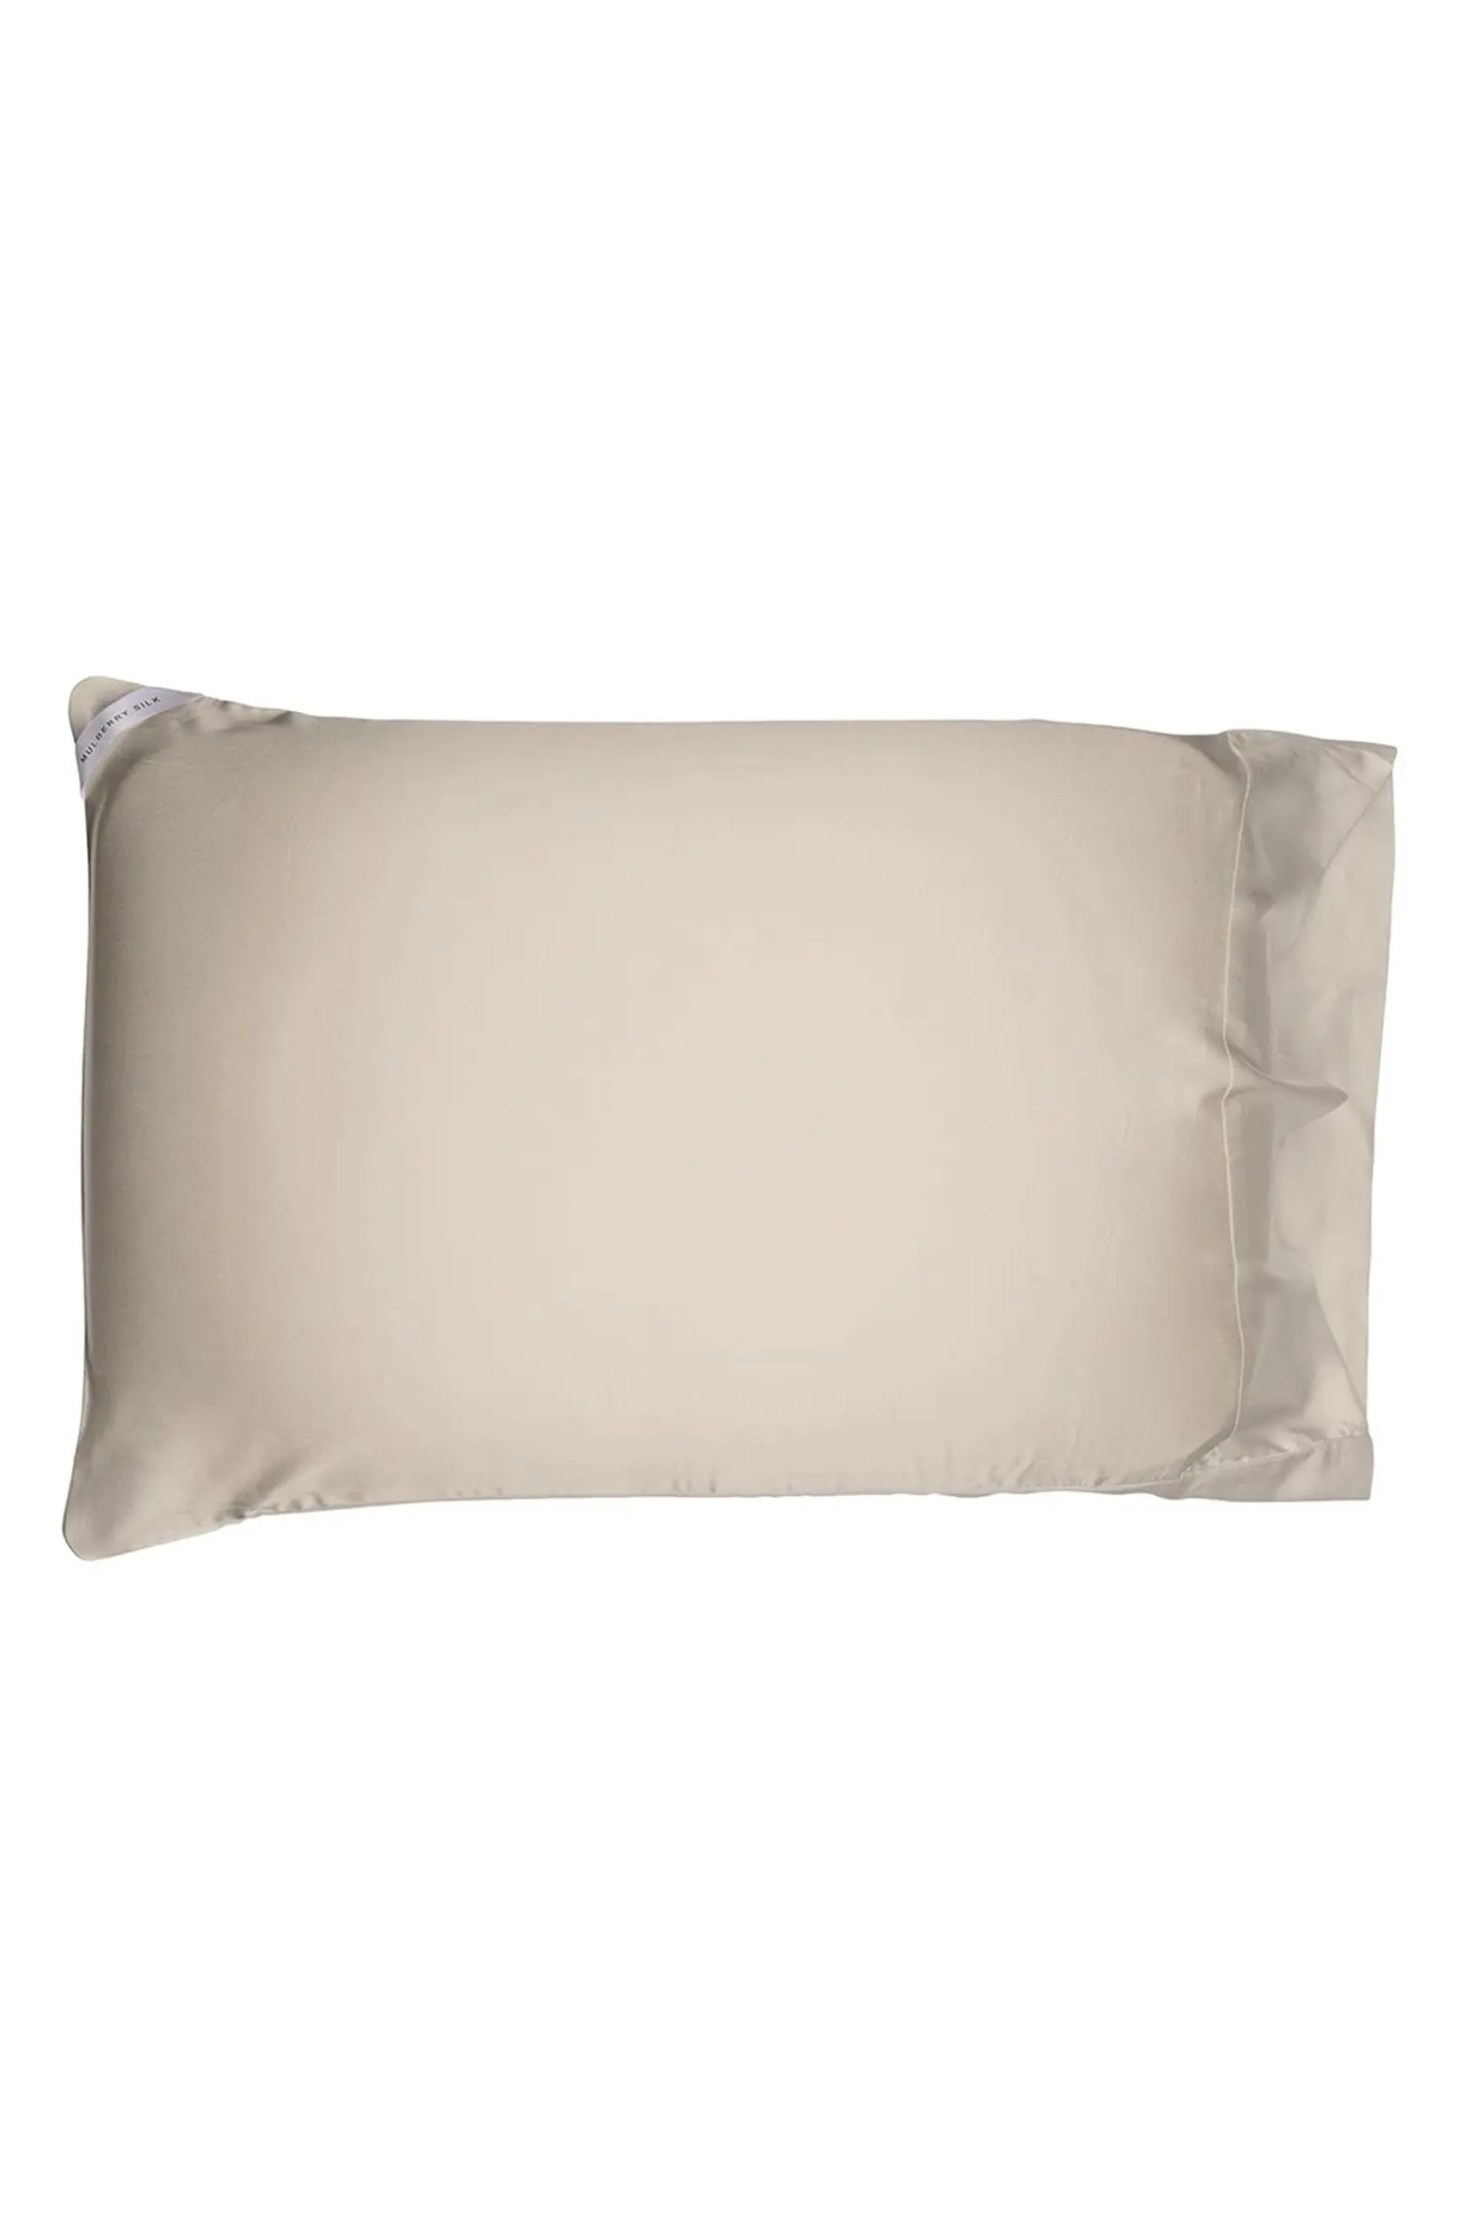 night silk plus silk pillowcase on a white background